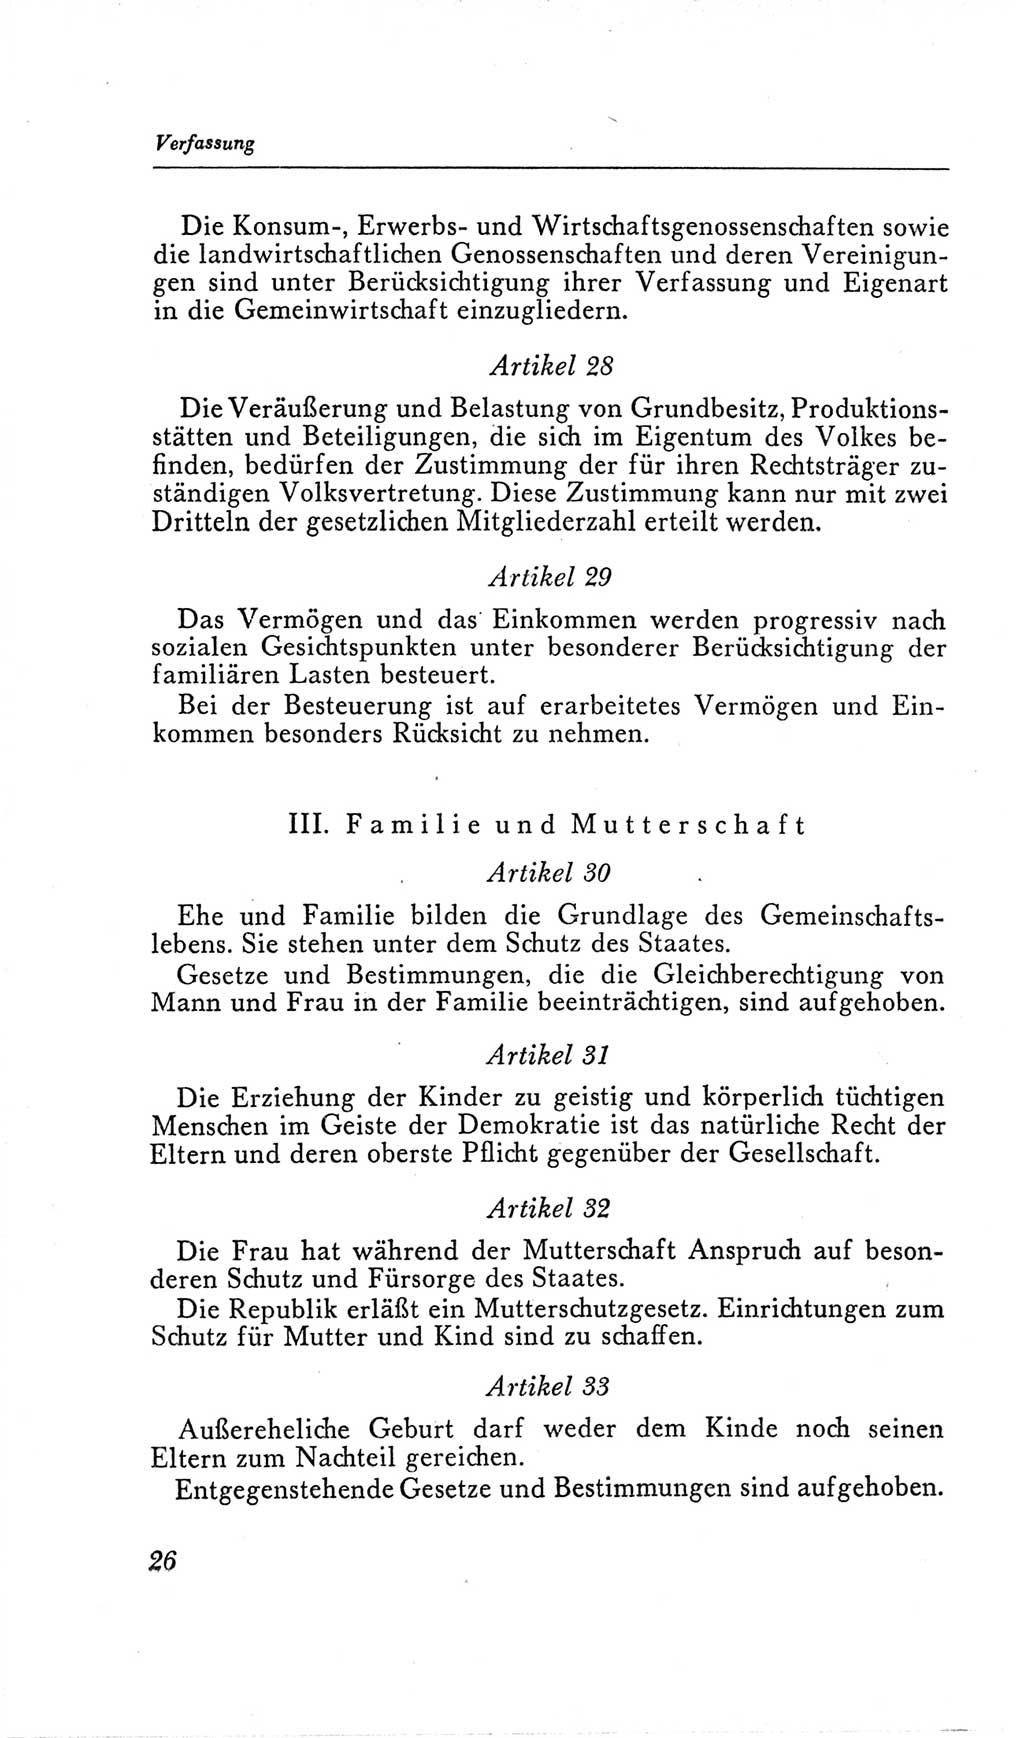 Handbuch der Volkskammer (VK) der Deutschen Demokratischen Republik (DDR), 2. Wahlperiode 1954-1958, Seite 26 (Hdb. VK. DDR, 2. WP. 1954-1958, S. 26)